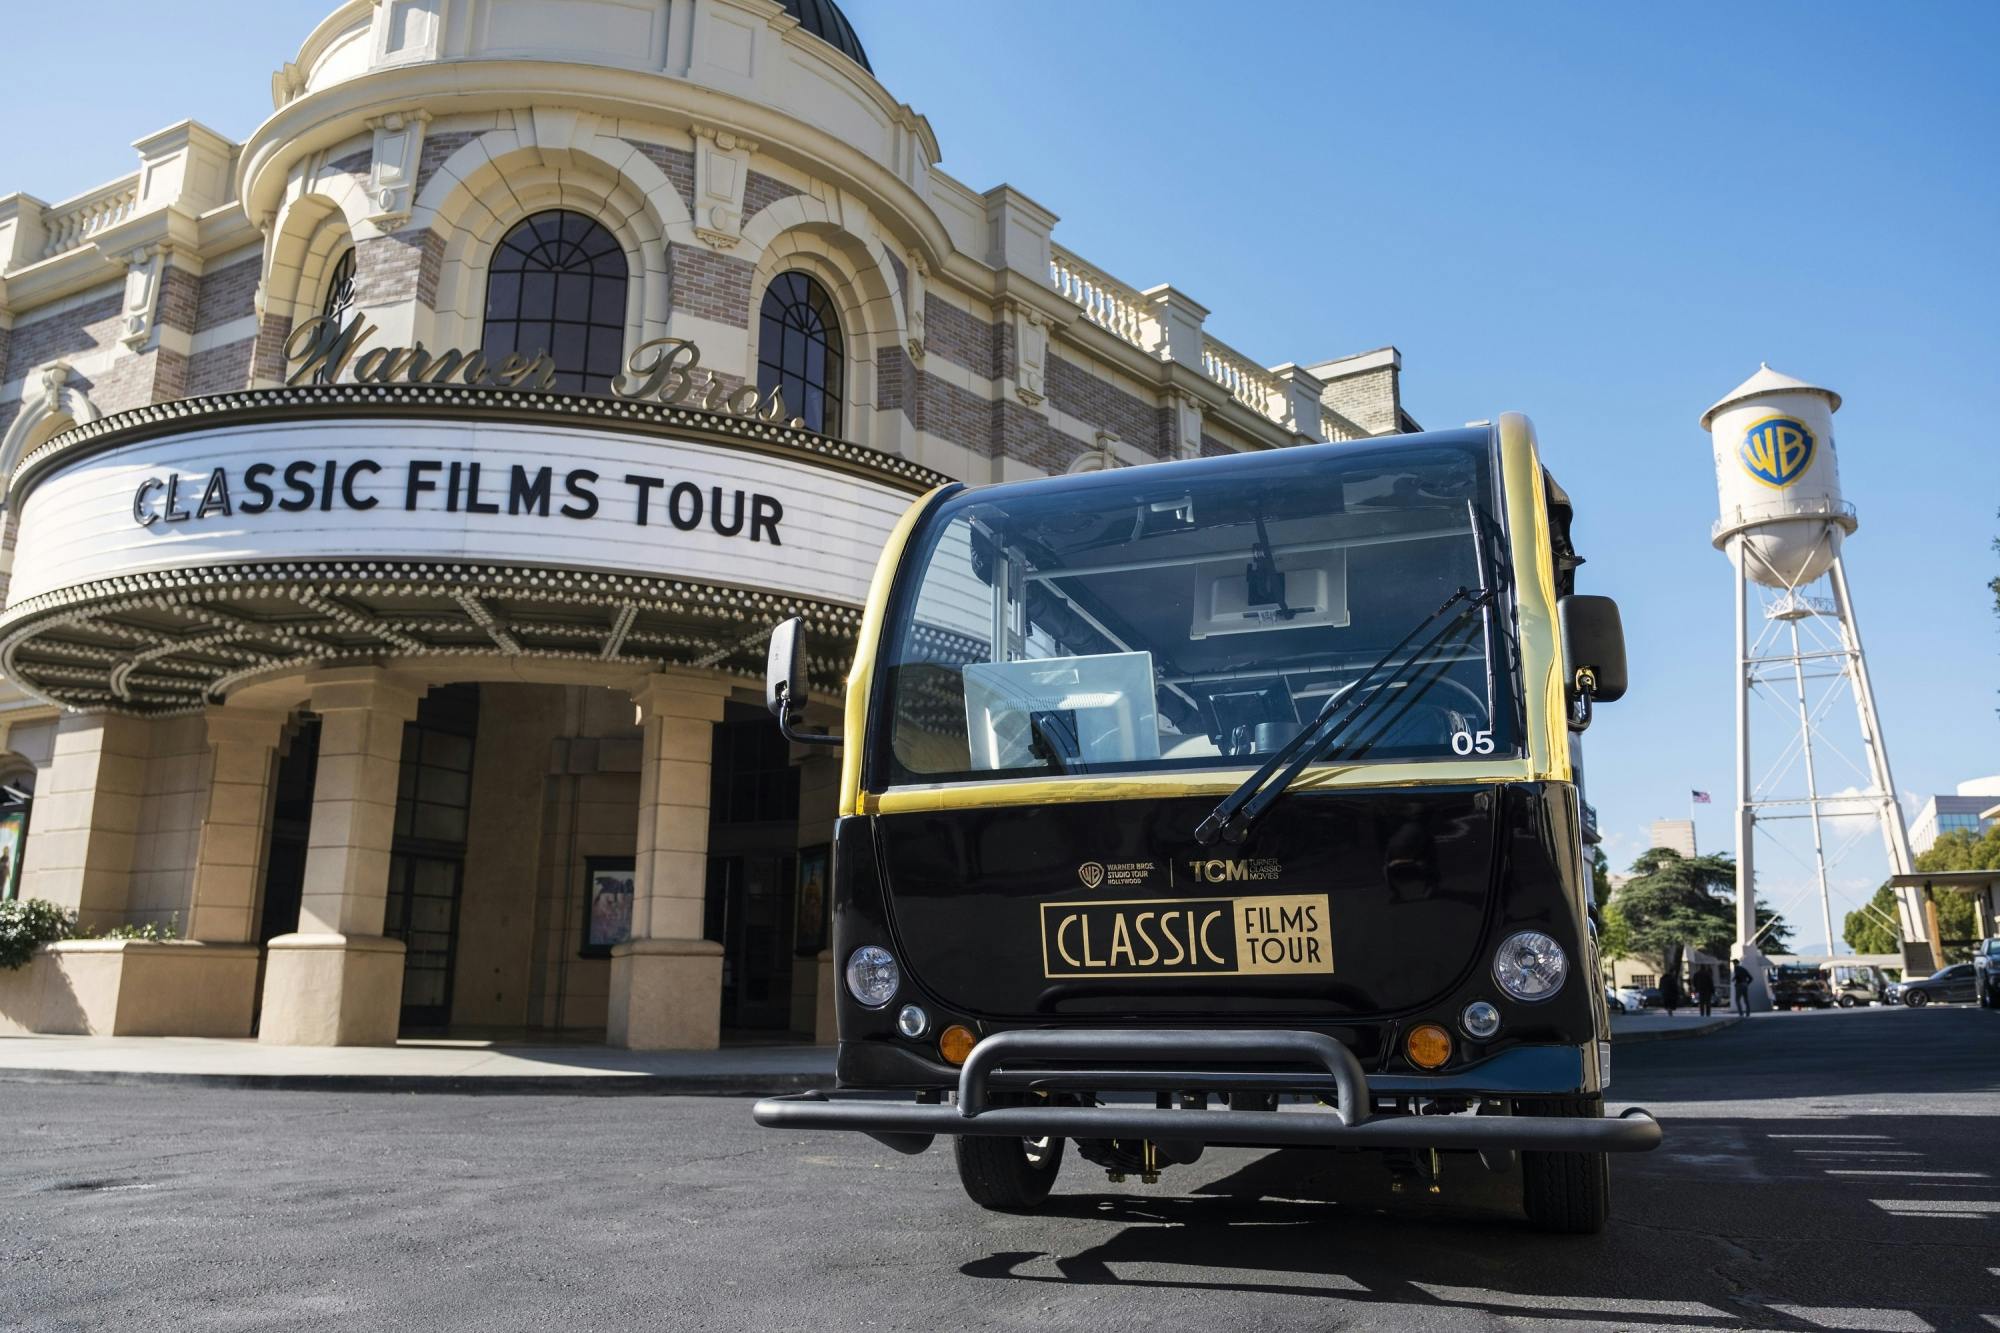 Warner Bros.‘ TCM-Tour durch klassische Filme